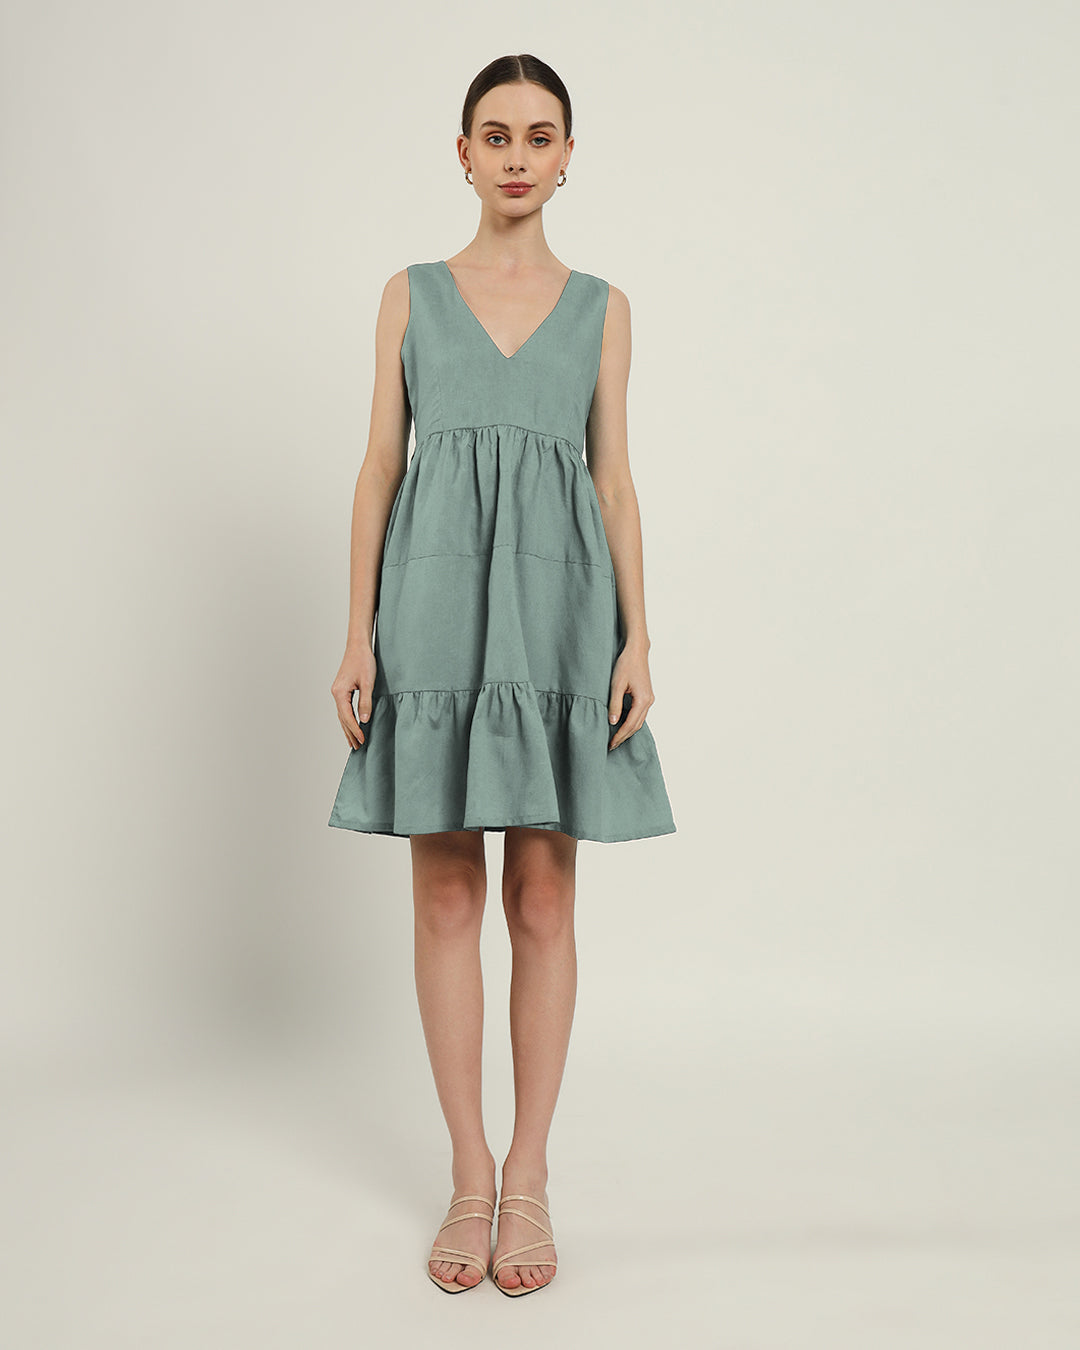 The Minsk Daisy Carolina Linen Dress